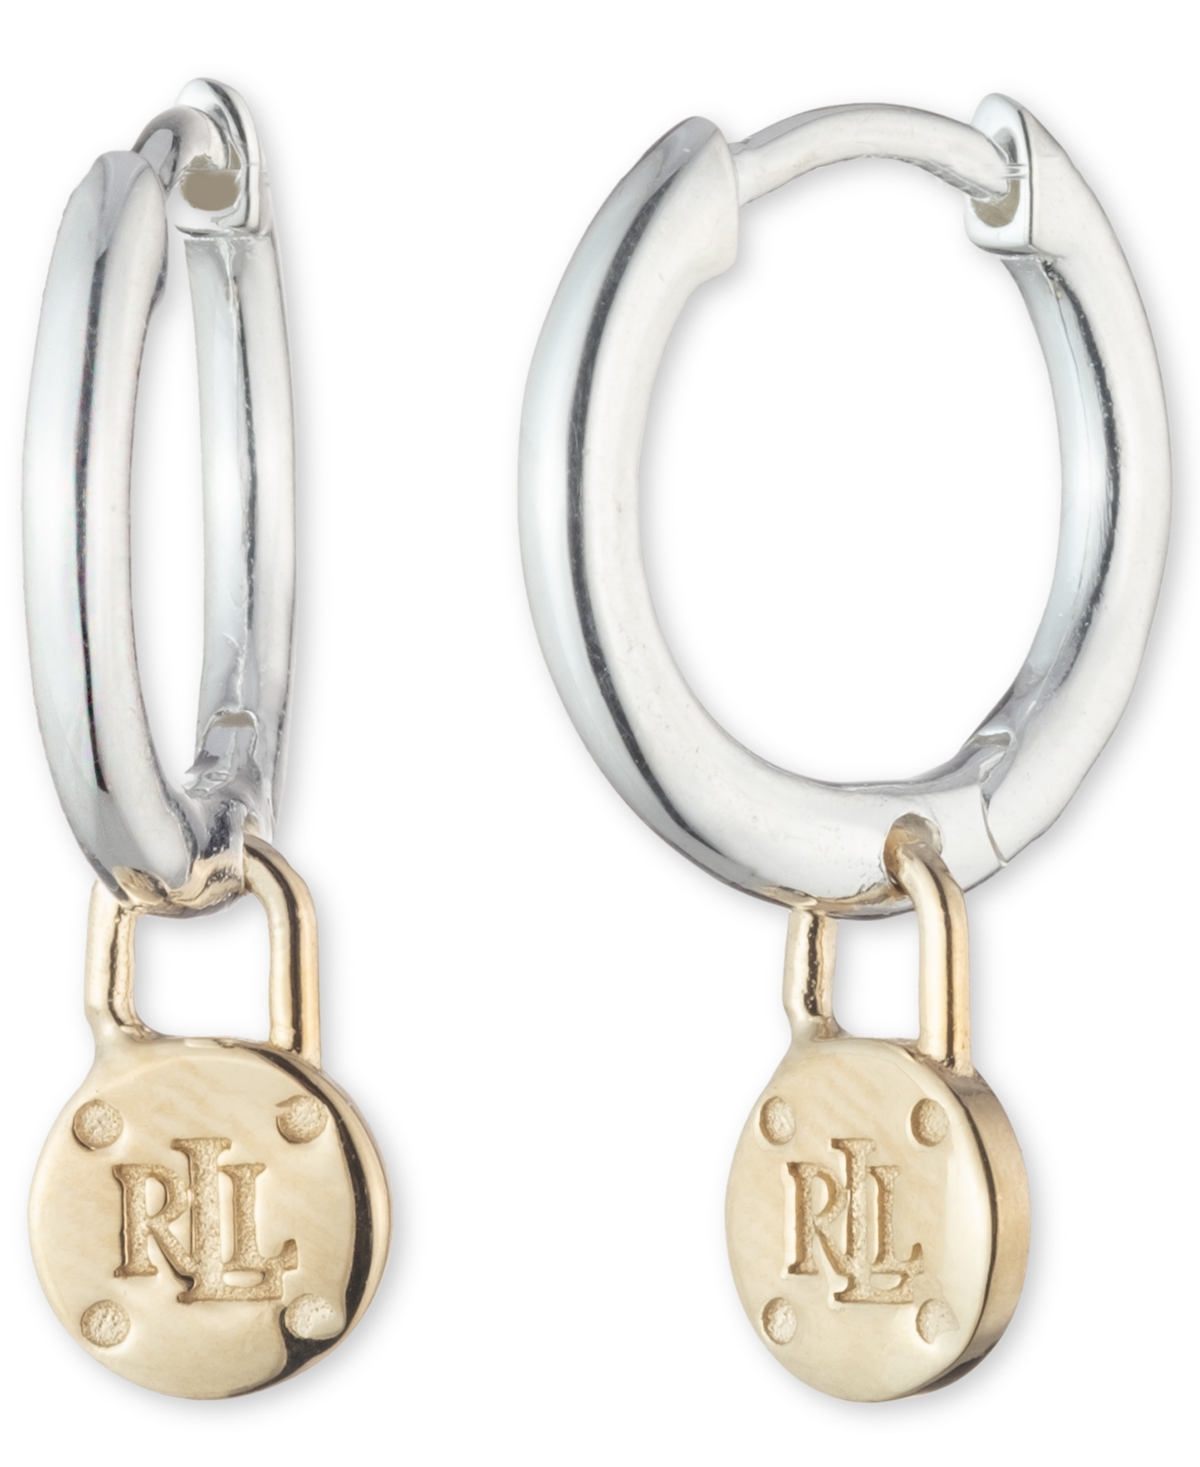 Lauren Ralph Lauren Padlock Logo Dangle Hoop Earrings in Sterling Silver & 18k Gold-Plate - Two-Tone